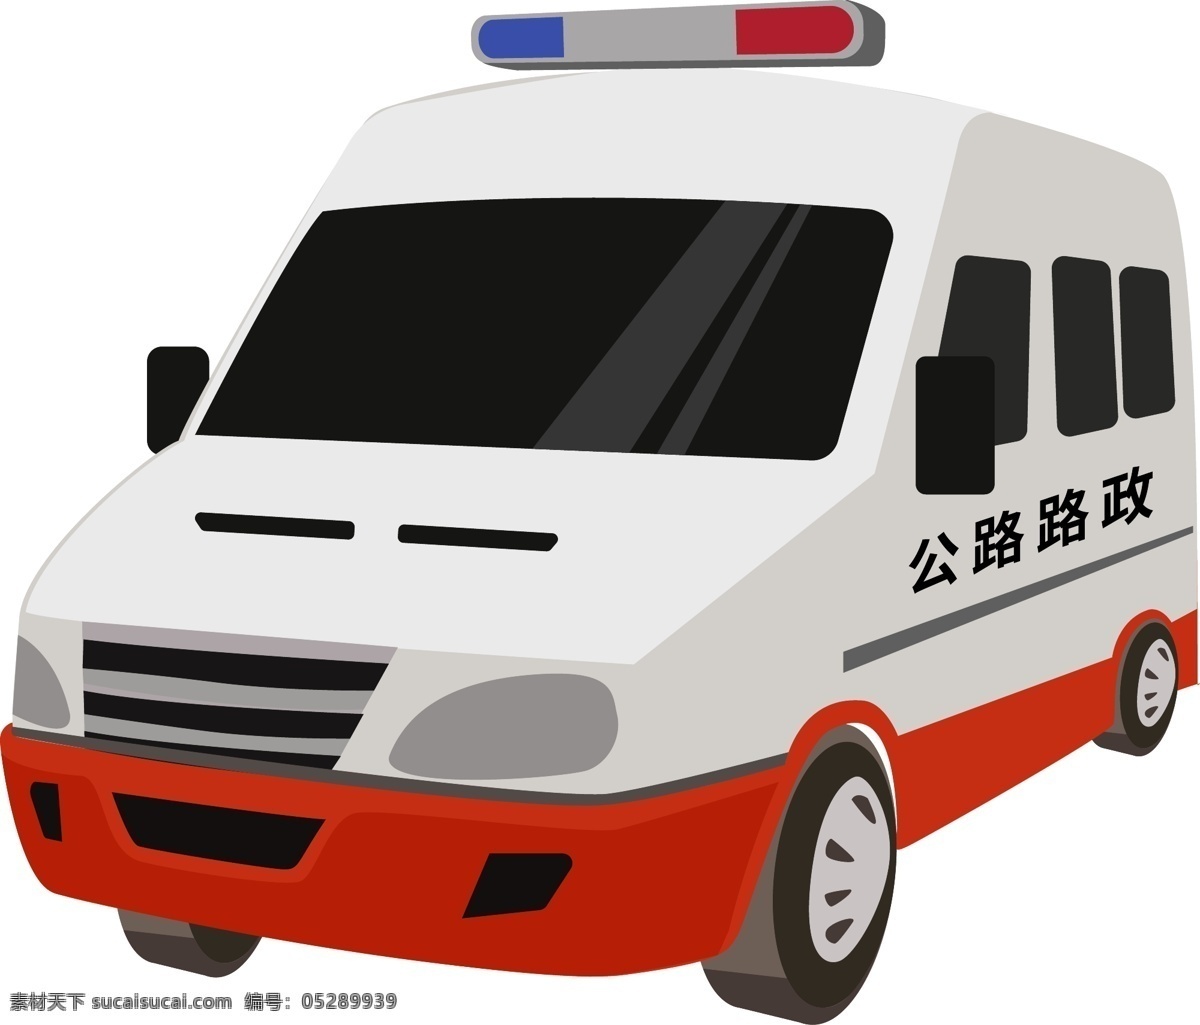 路政车辆 面包车 救援车 救护车 急救车 标志图标 其他图标